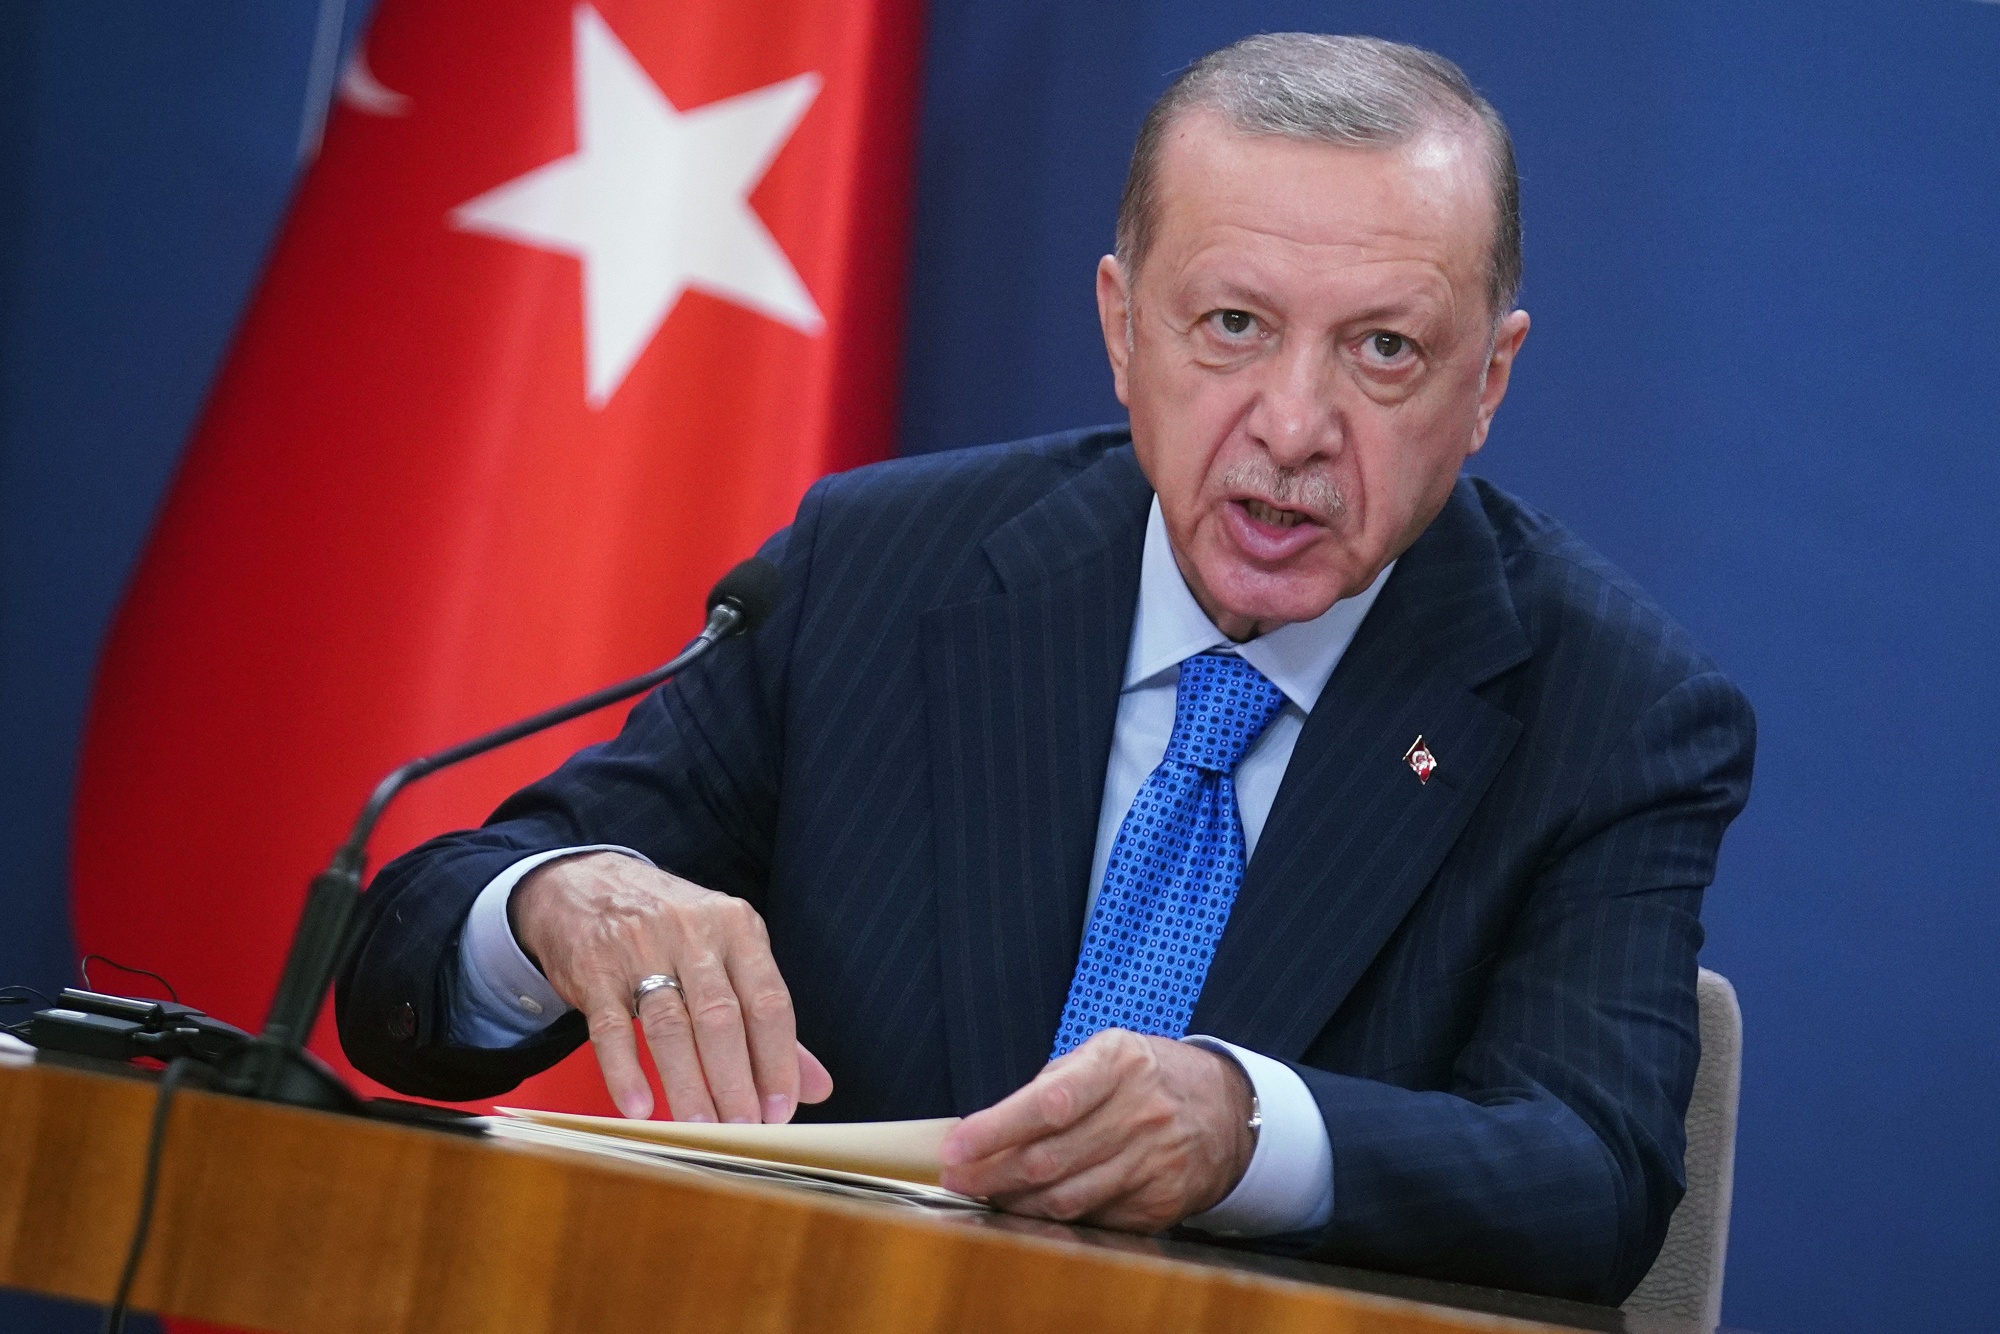   أردوغان: فقدنا فرصة السلام في صراع غزة حالياً